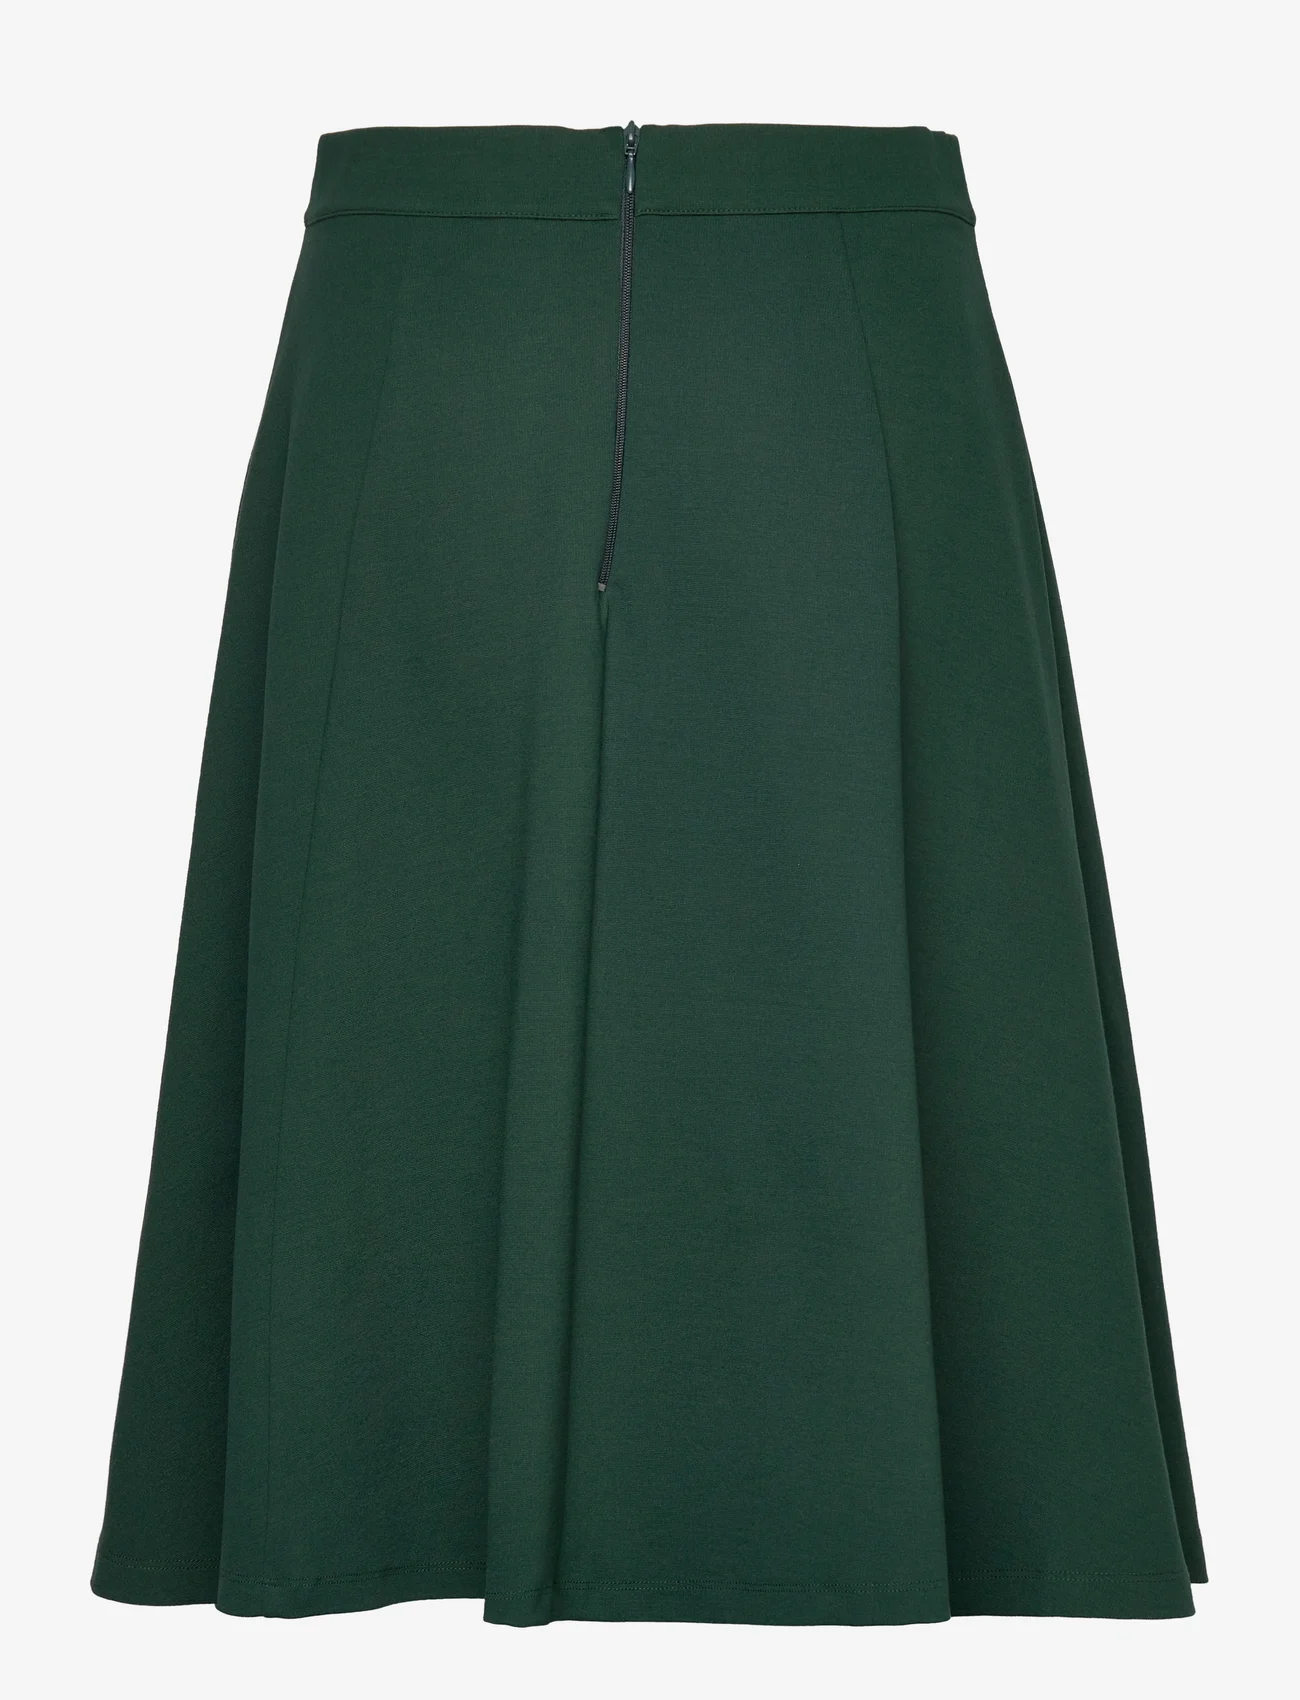 Jumperfabriken - Sarita skirt Darkgreen - kurze röcke - green - 1